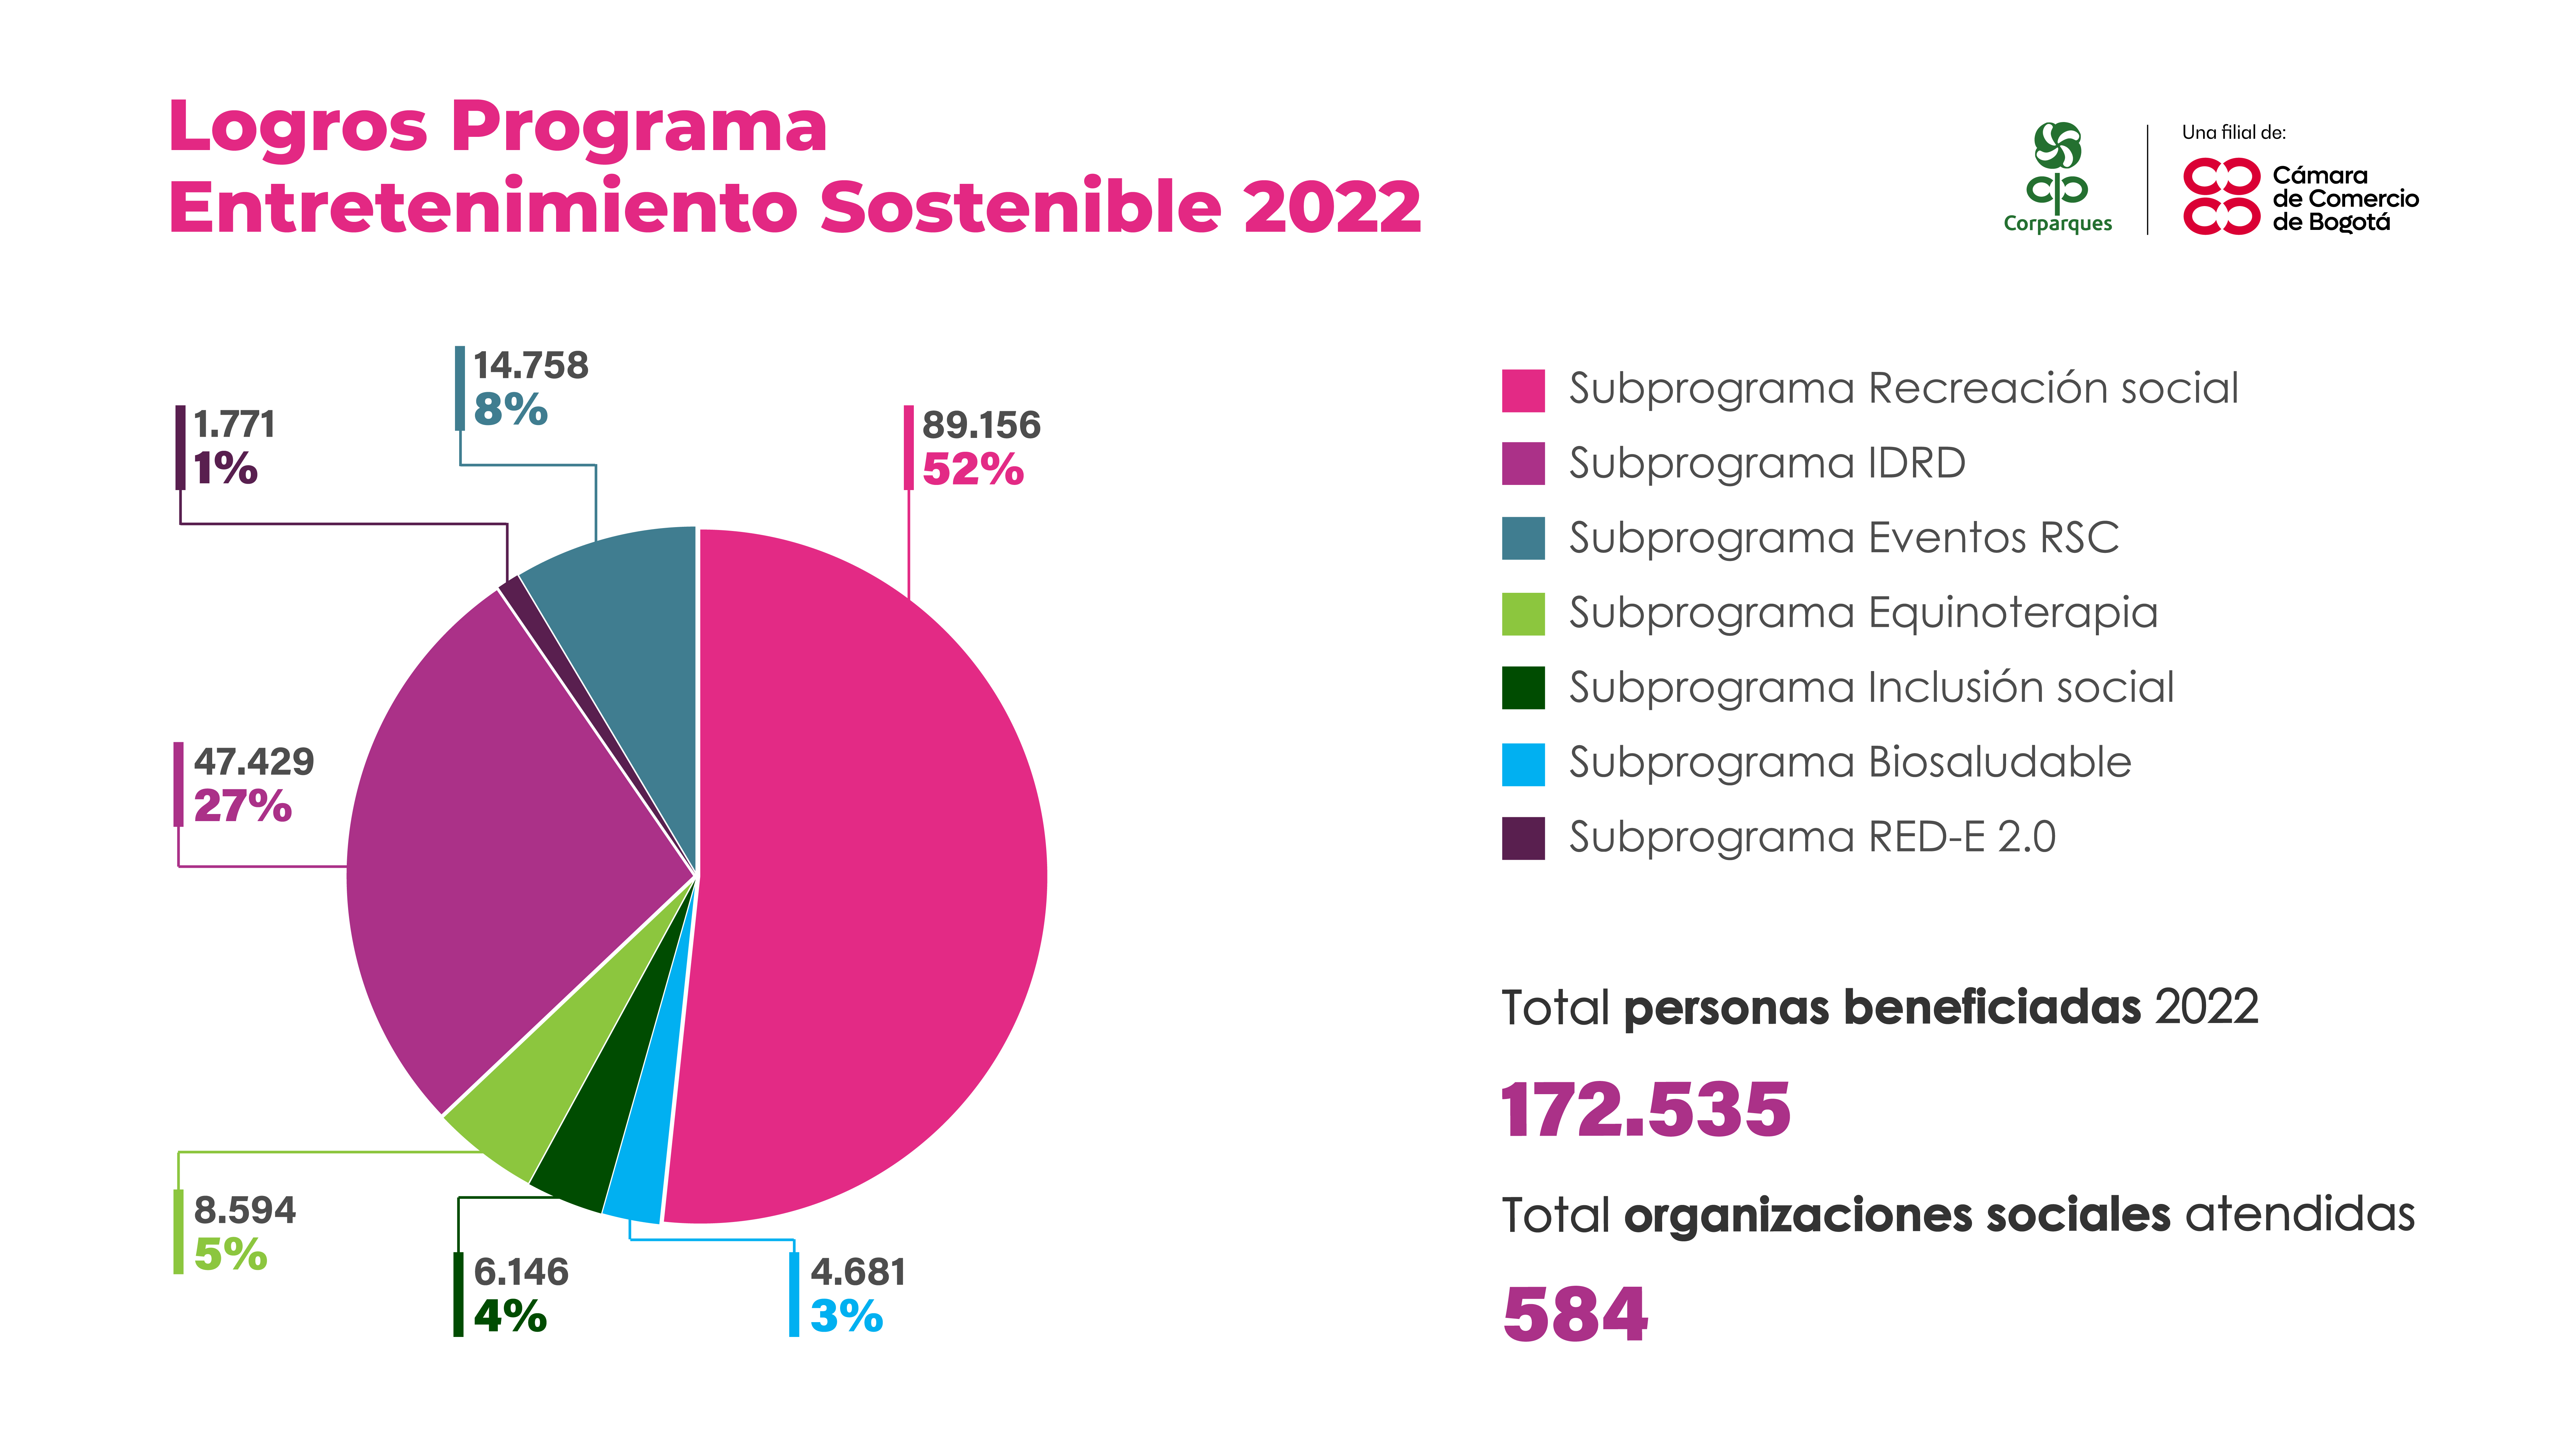 Logros programa Entretenimiento Sostenible 2022